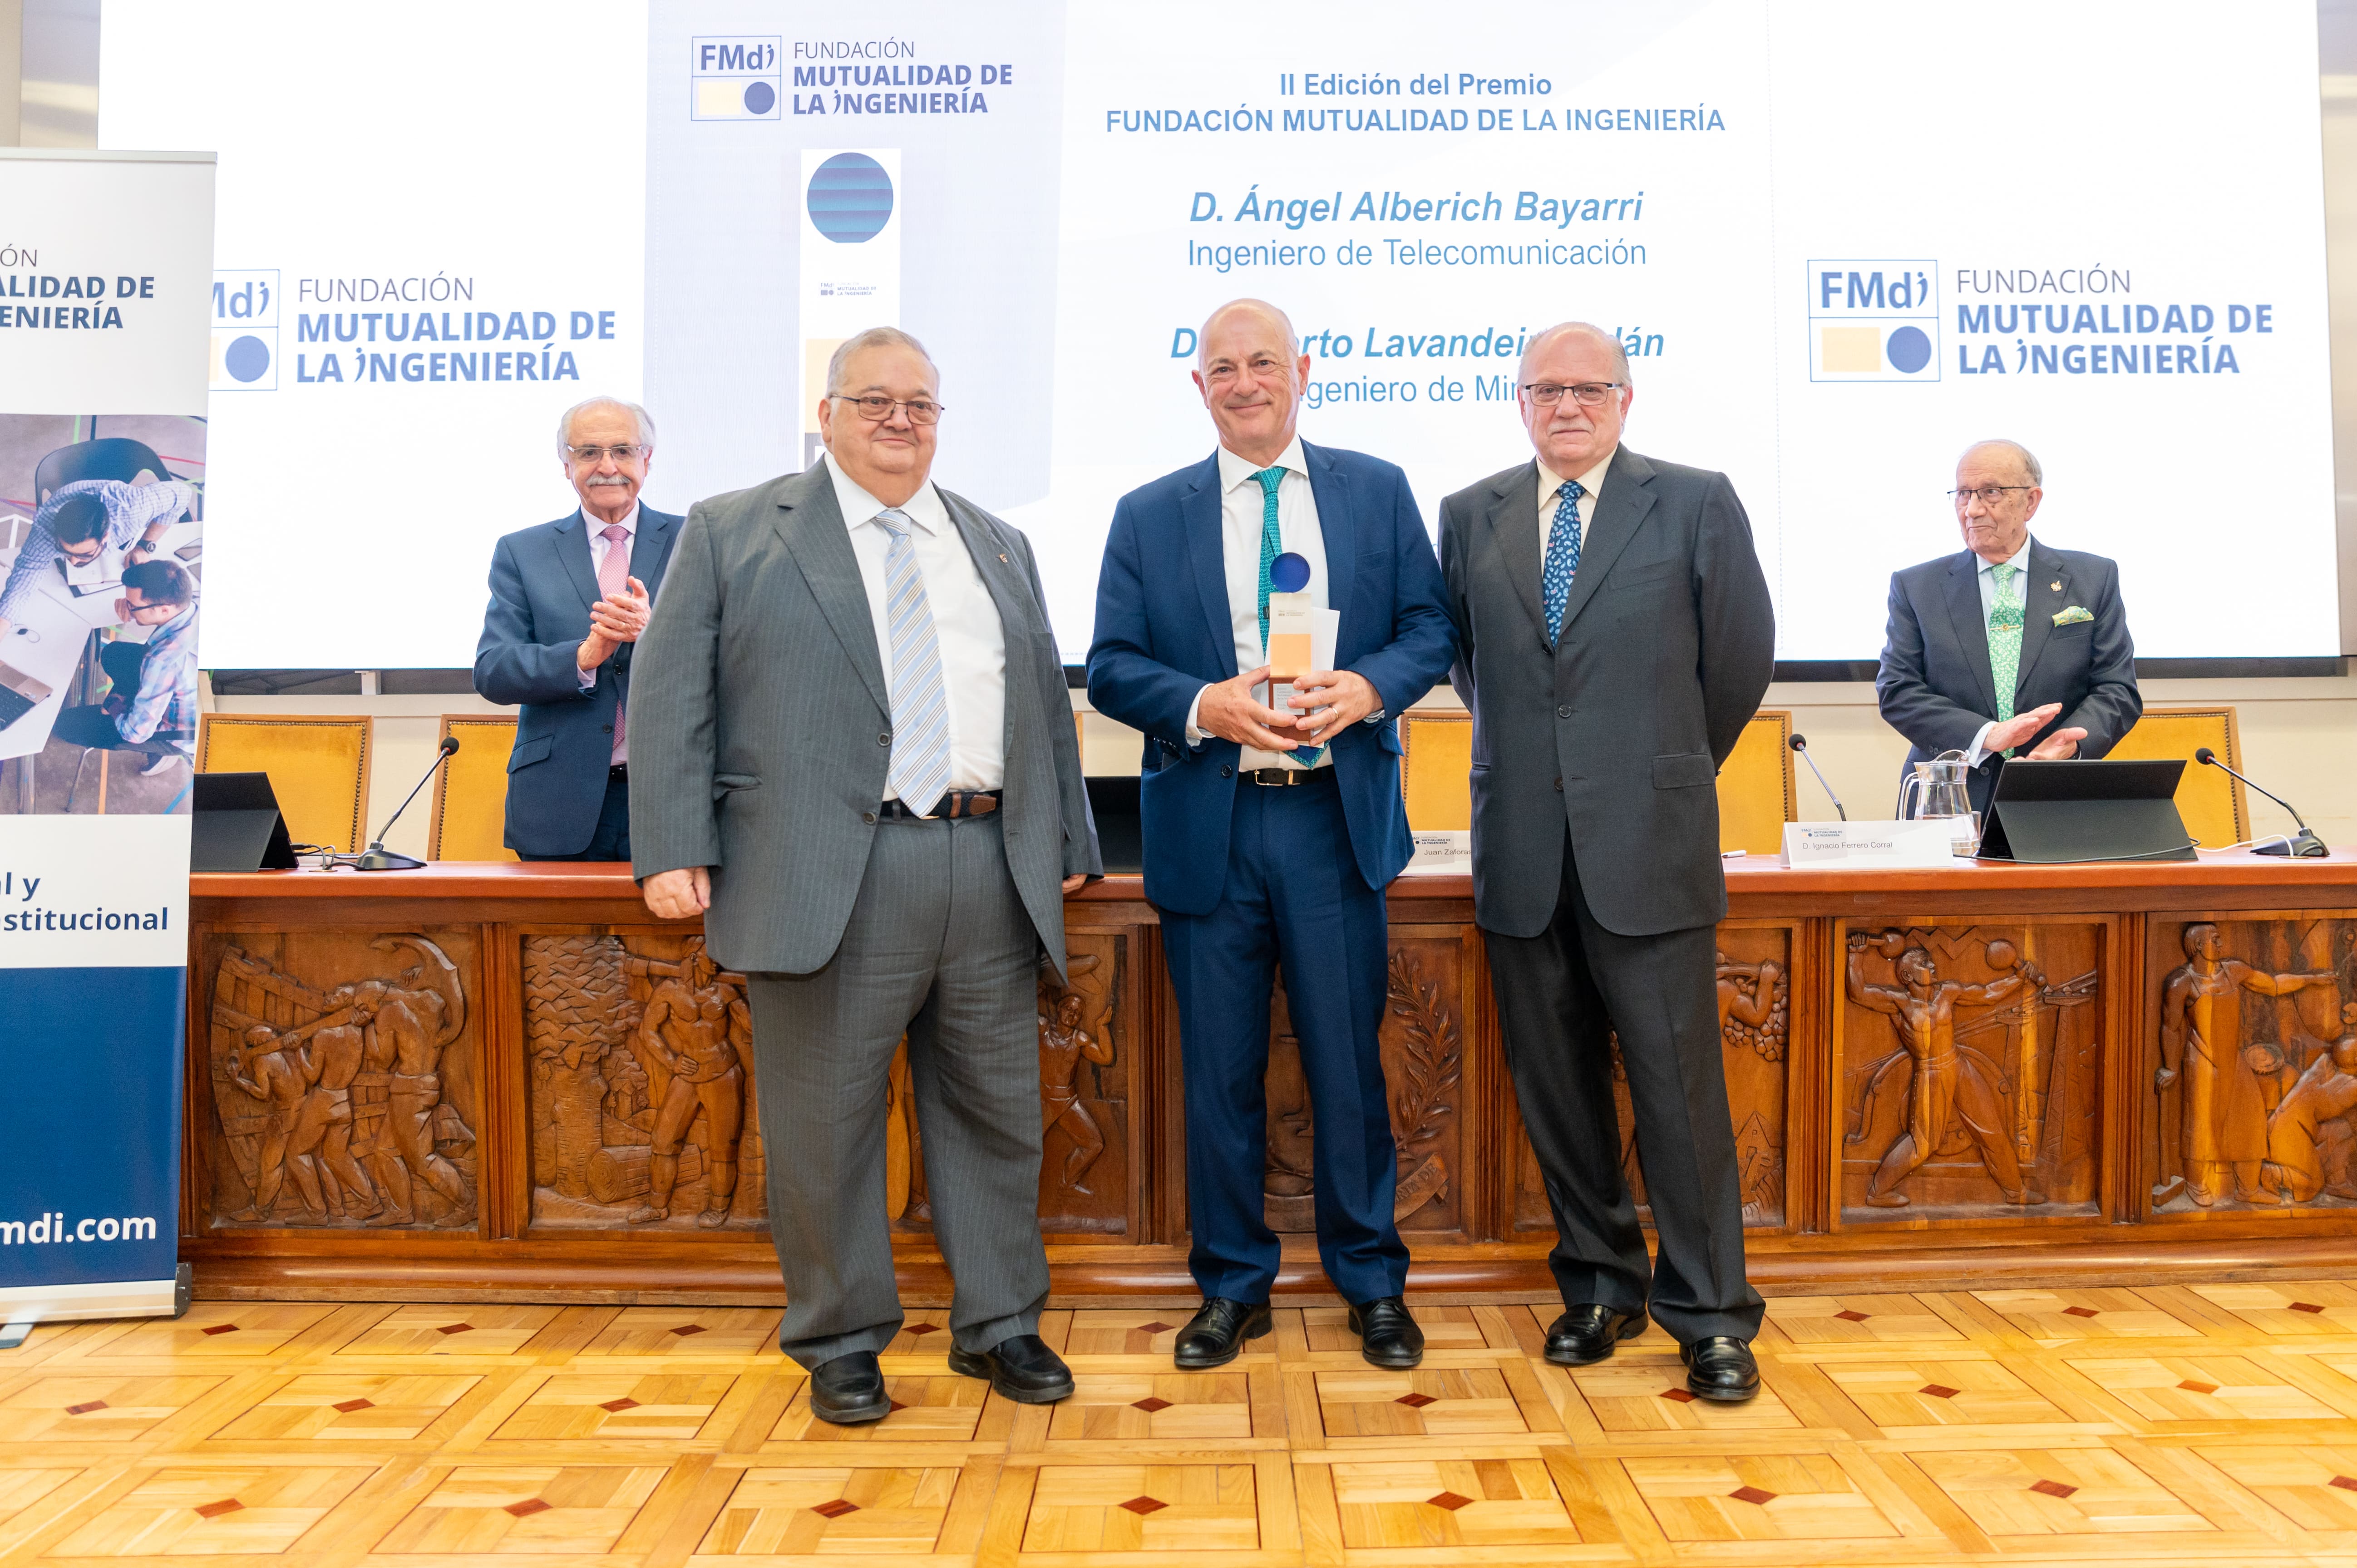 La Mutualidad de la Ingeniería premia la carrera de Alberto Lavandeira, ingeniero de Minas y CEO de Atalaya Mining